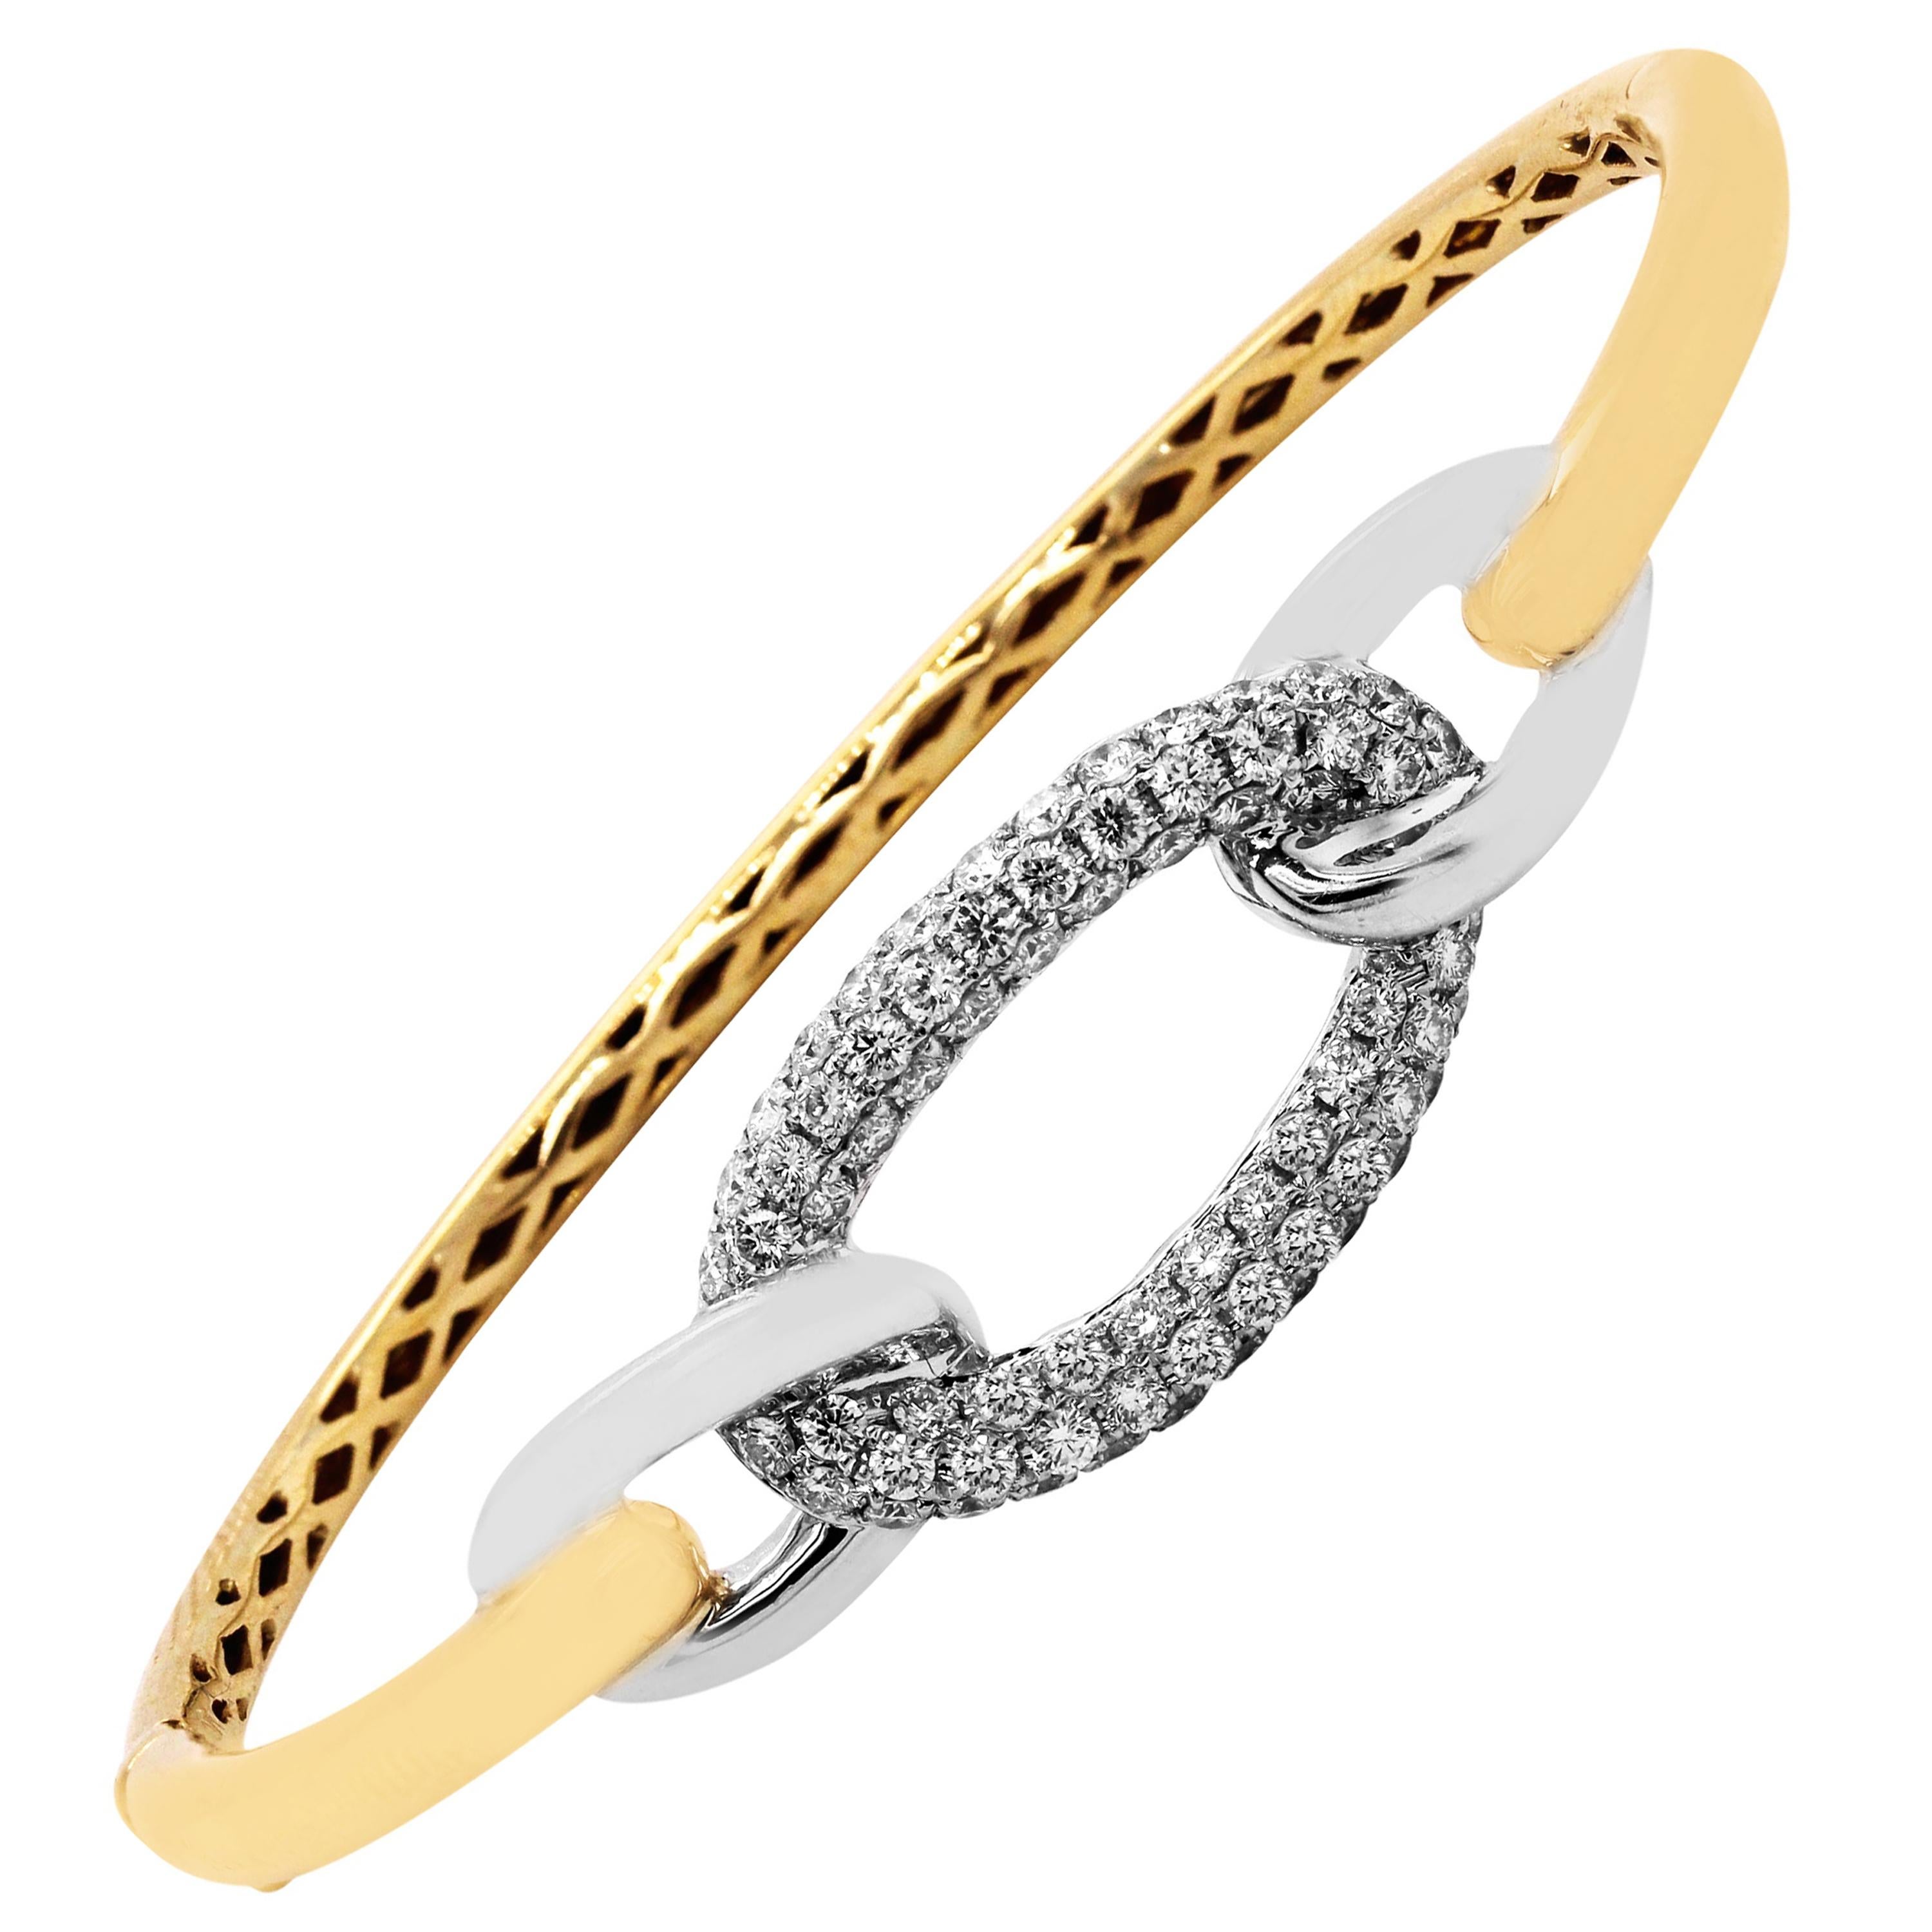 Two-Tone Yellow White Gold and Diamond Bangle Bracelet